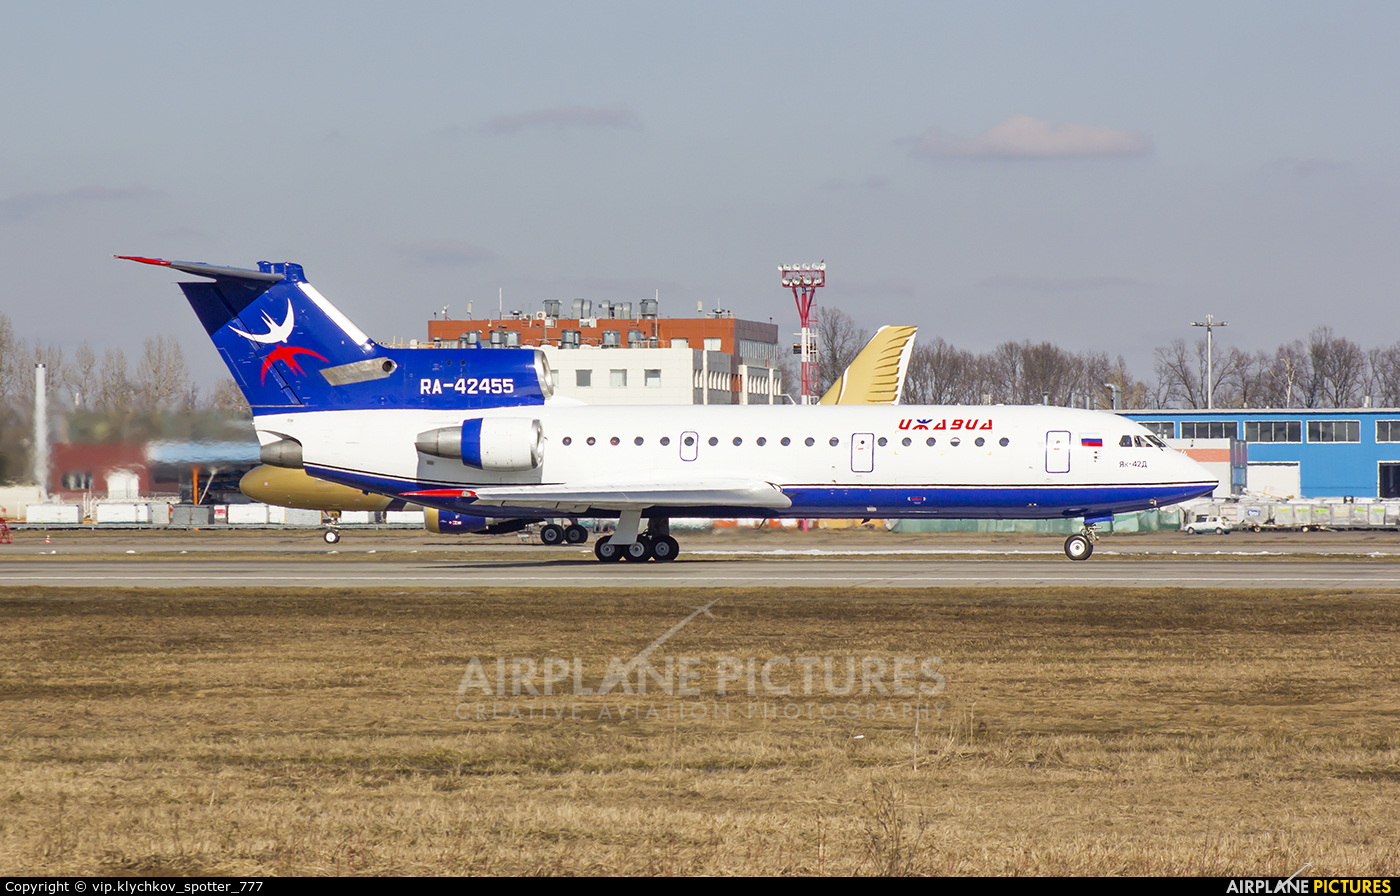 Izhavia RA-42455 aircraft at Moscow - Domodedovo